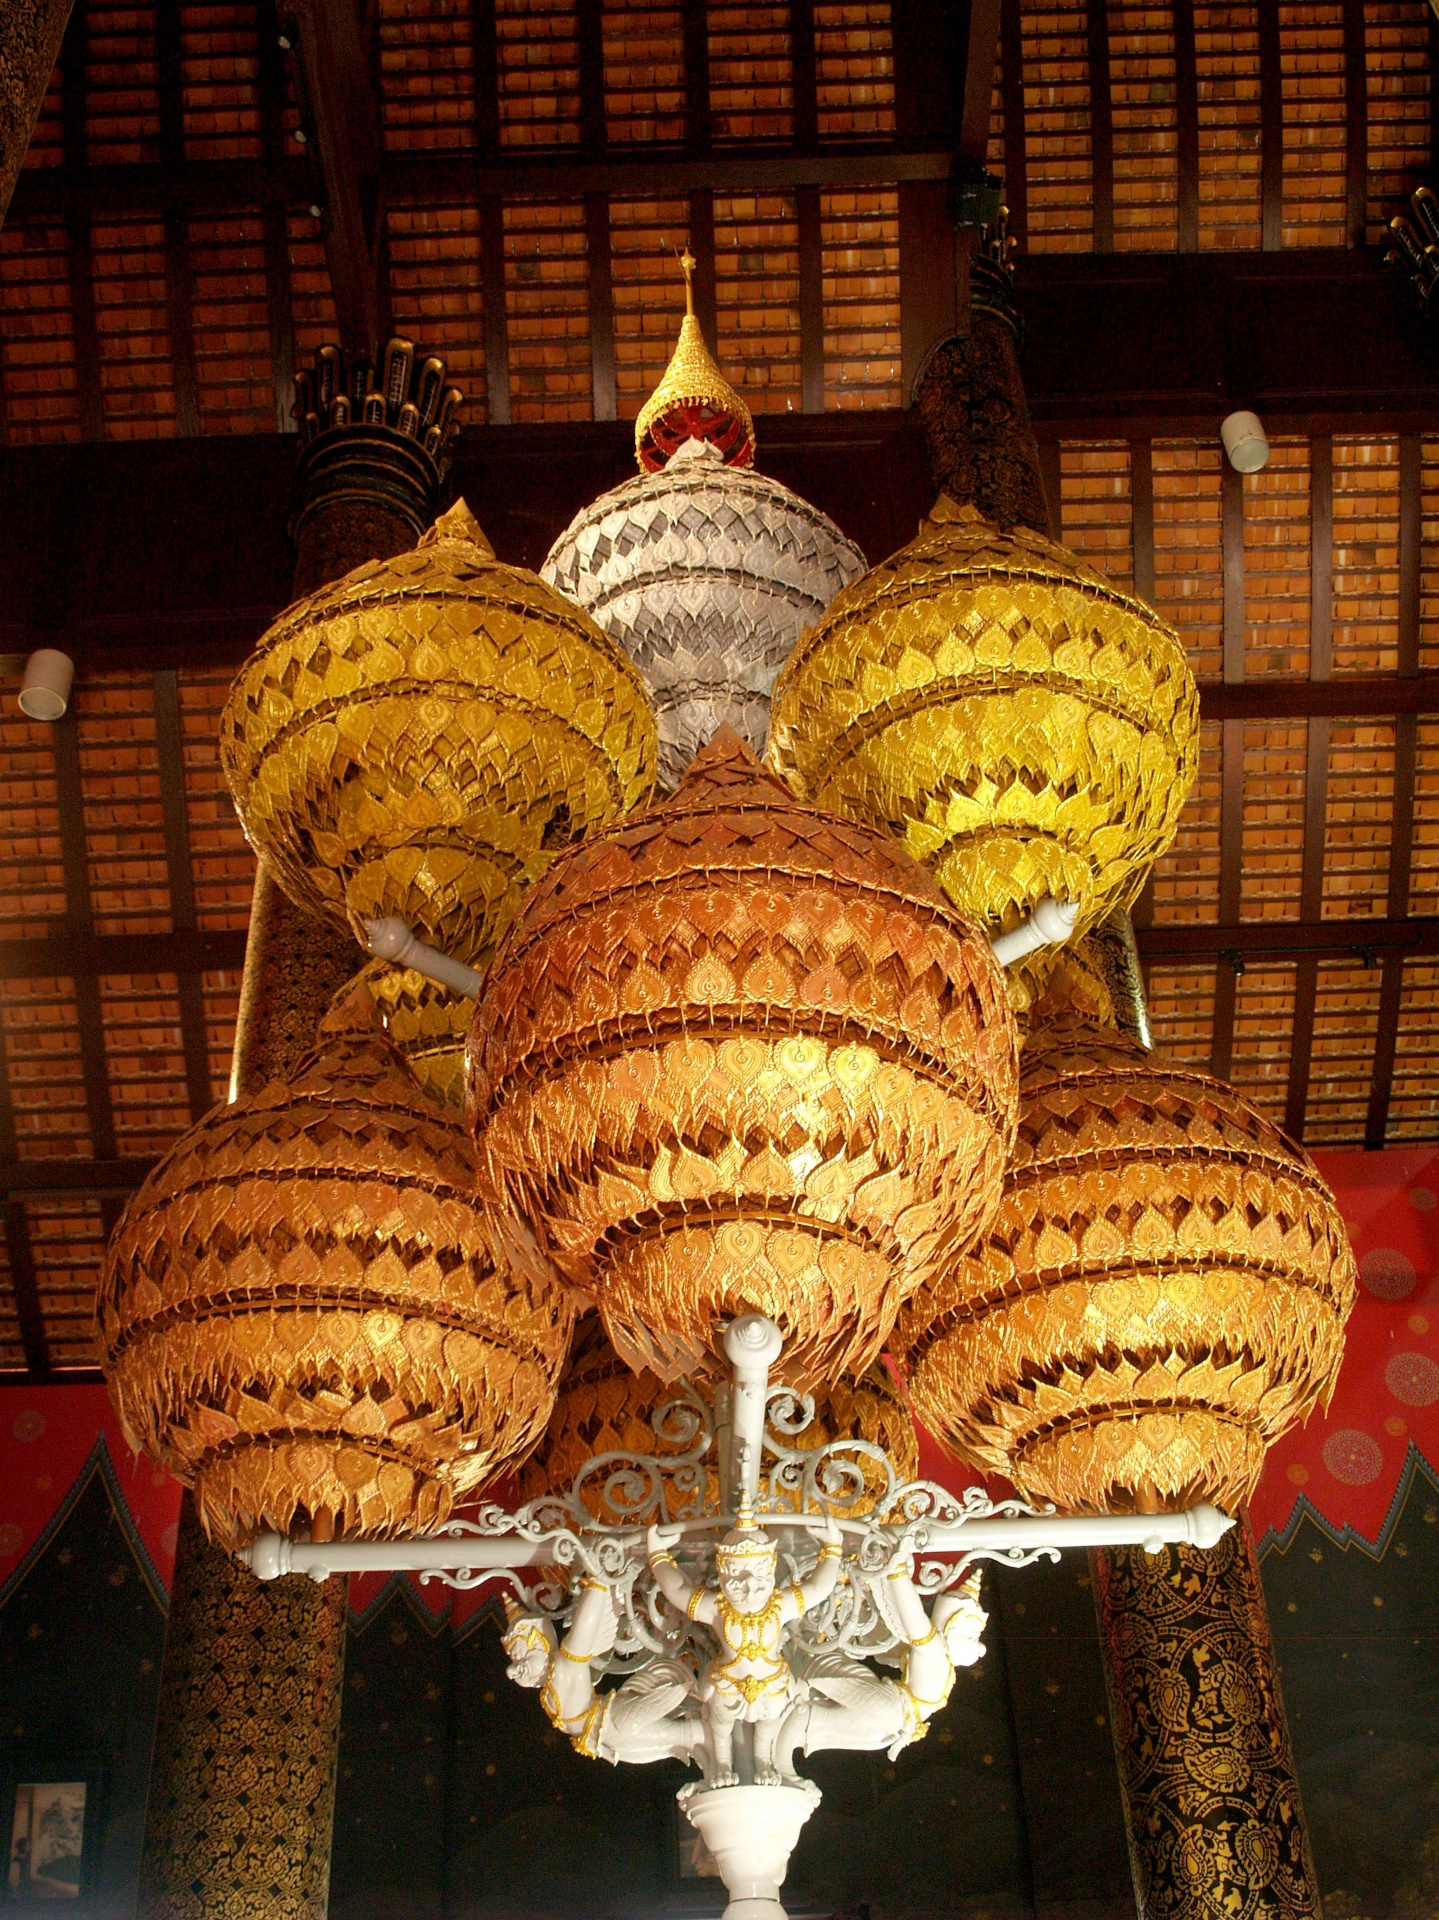 Chiangmai koninklijk paviljoen chiangmai